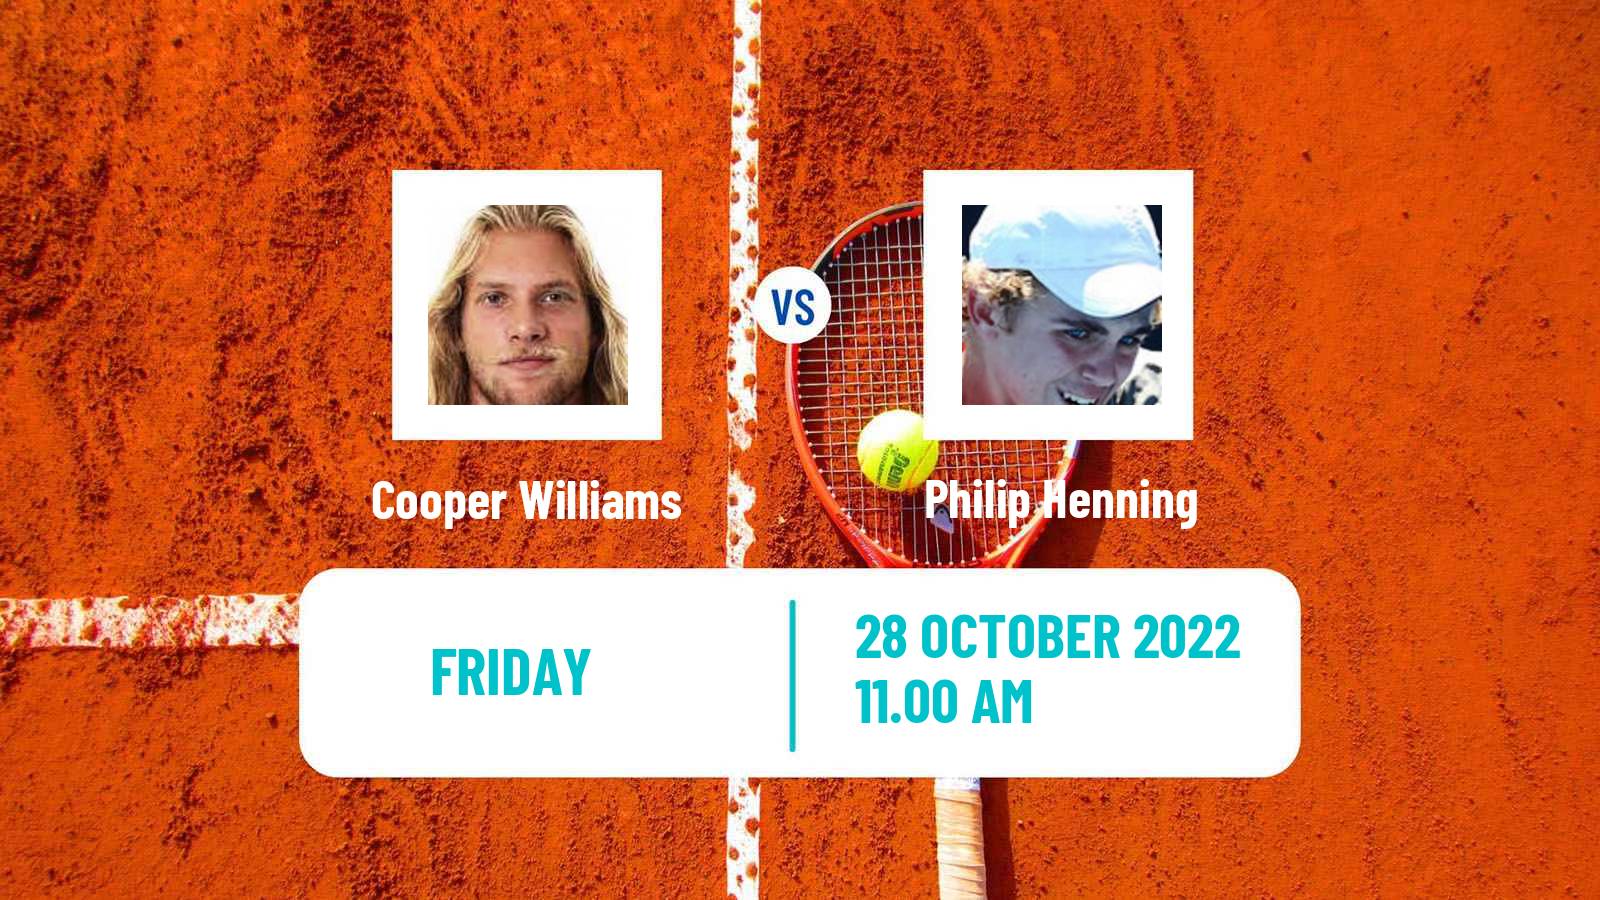 Tennis ITF Tournaments Kütahya - Philip Henning